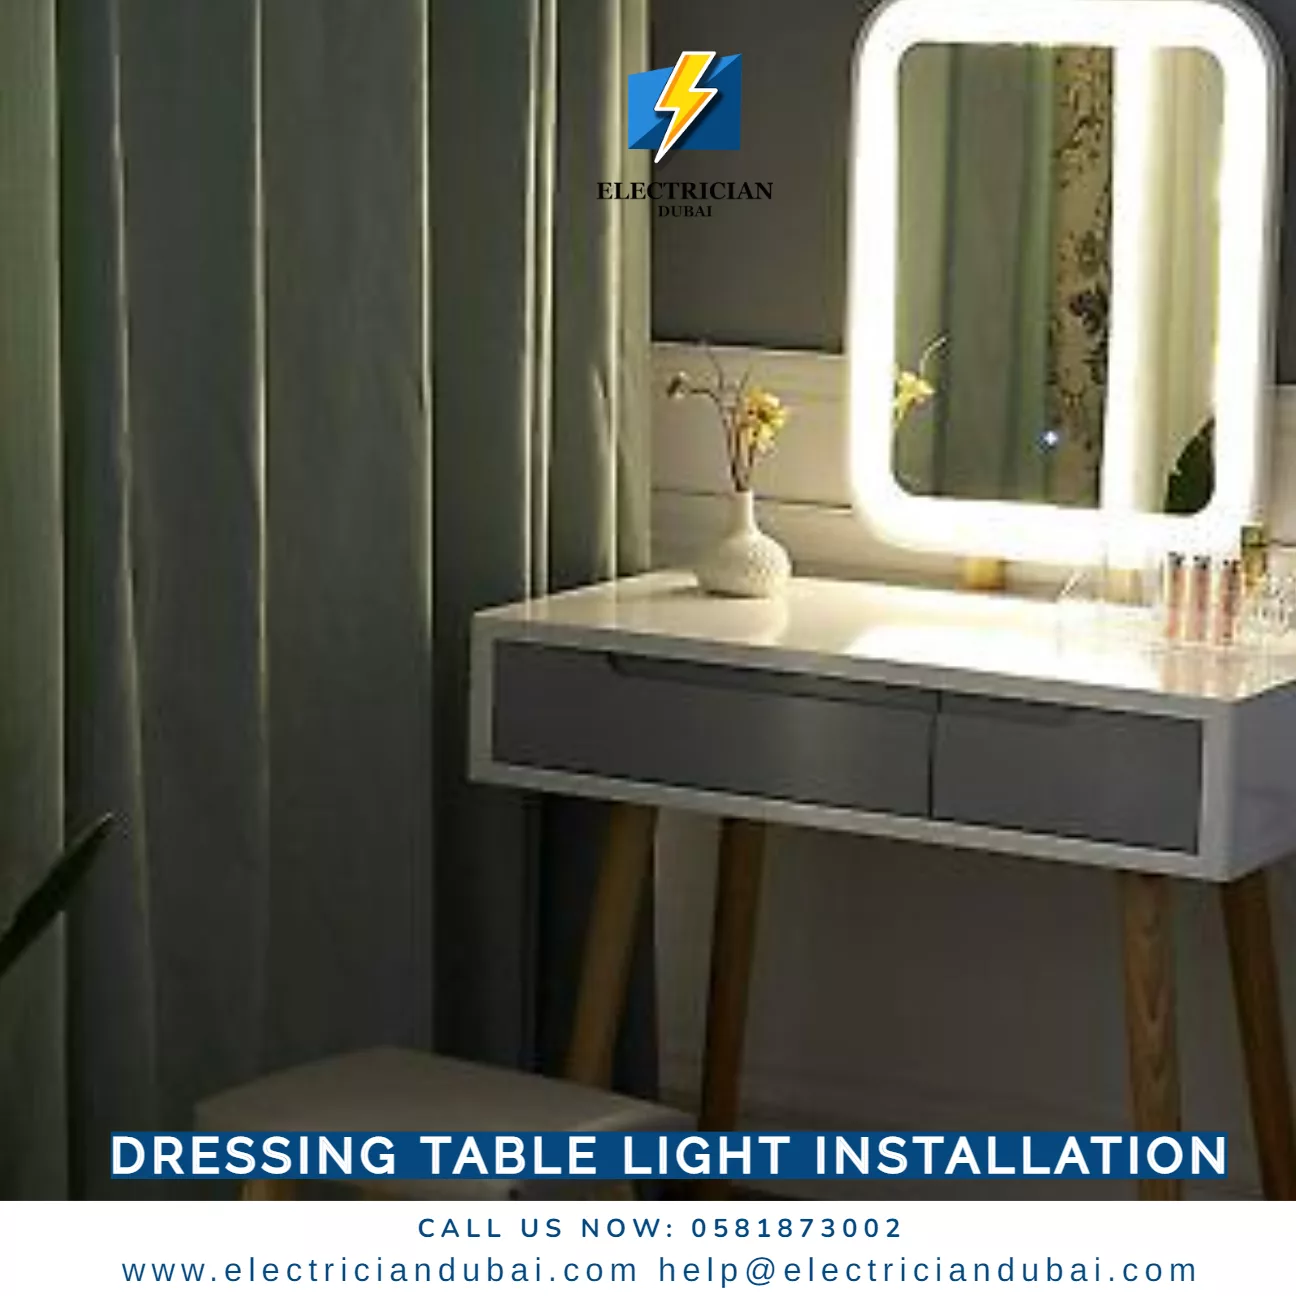 Dressing table light installation